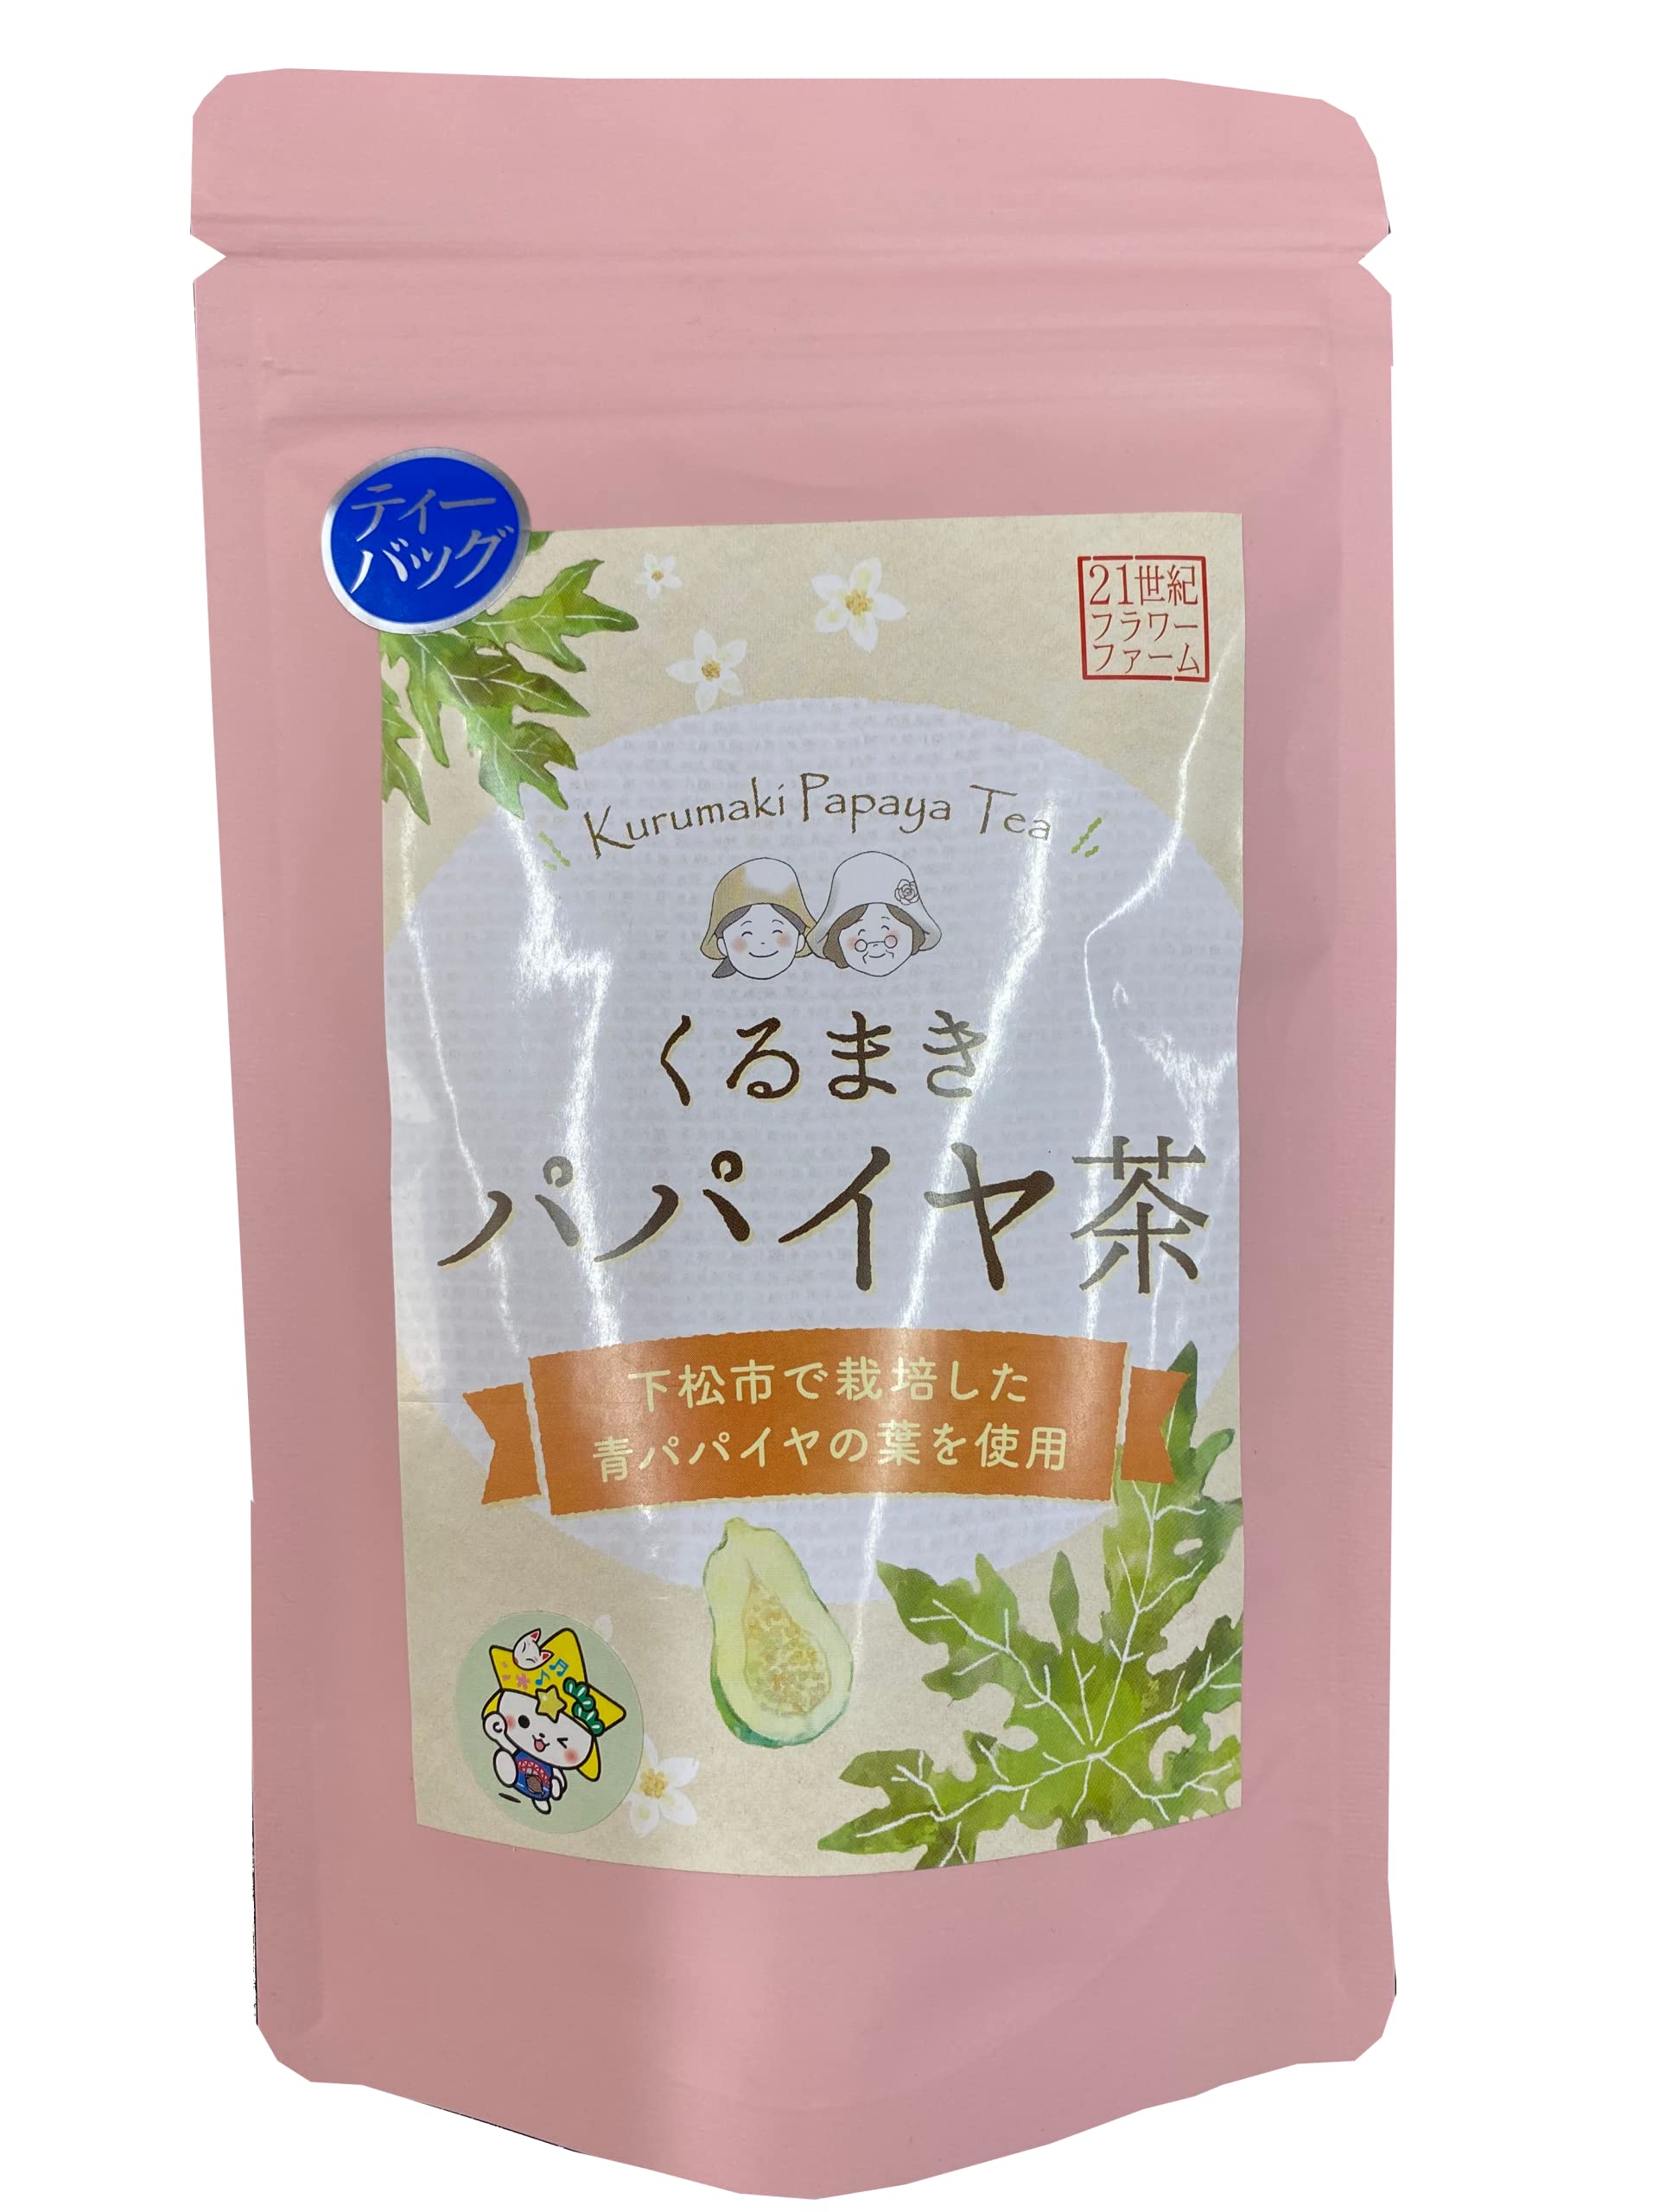 青パパイヤ茶 スーパーフード パパイン酵素 日本産 無農薬栽培 ティーバック ポリフェノール パパイヤ 10包 (1袋)